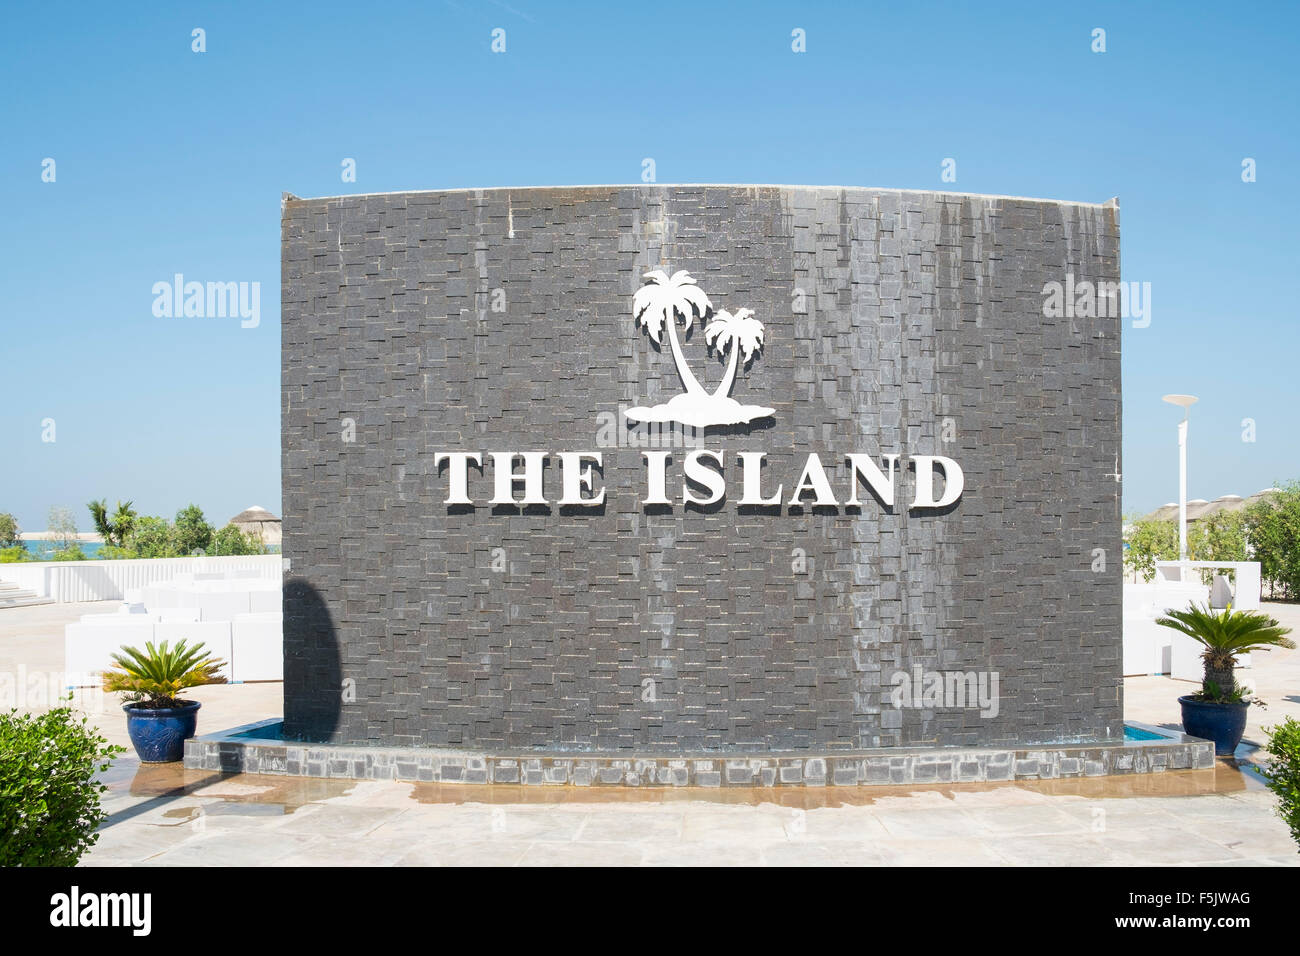 L'Île Liban beach resort sur l'île, un homme fait partie du monde au large de la côte de Dubaï en Émirats Arabes Unis Banque D'Images